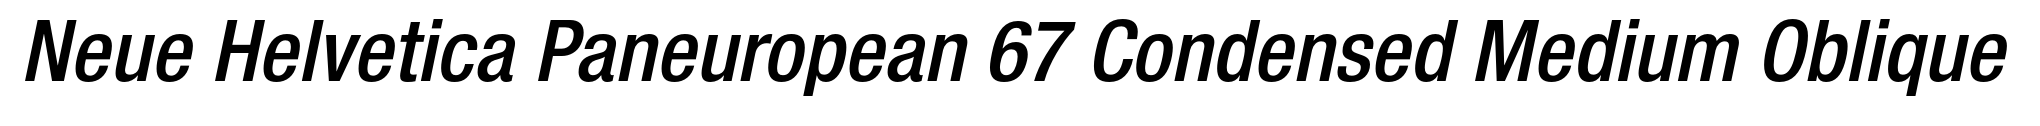 Neue Helvetica Paneuropean 67 Condensed Medium Oblique image